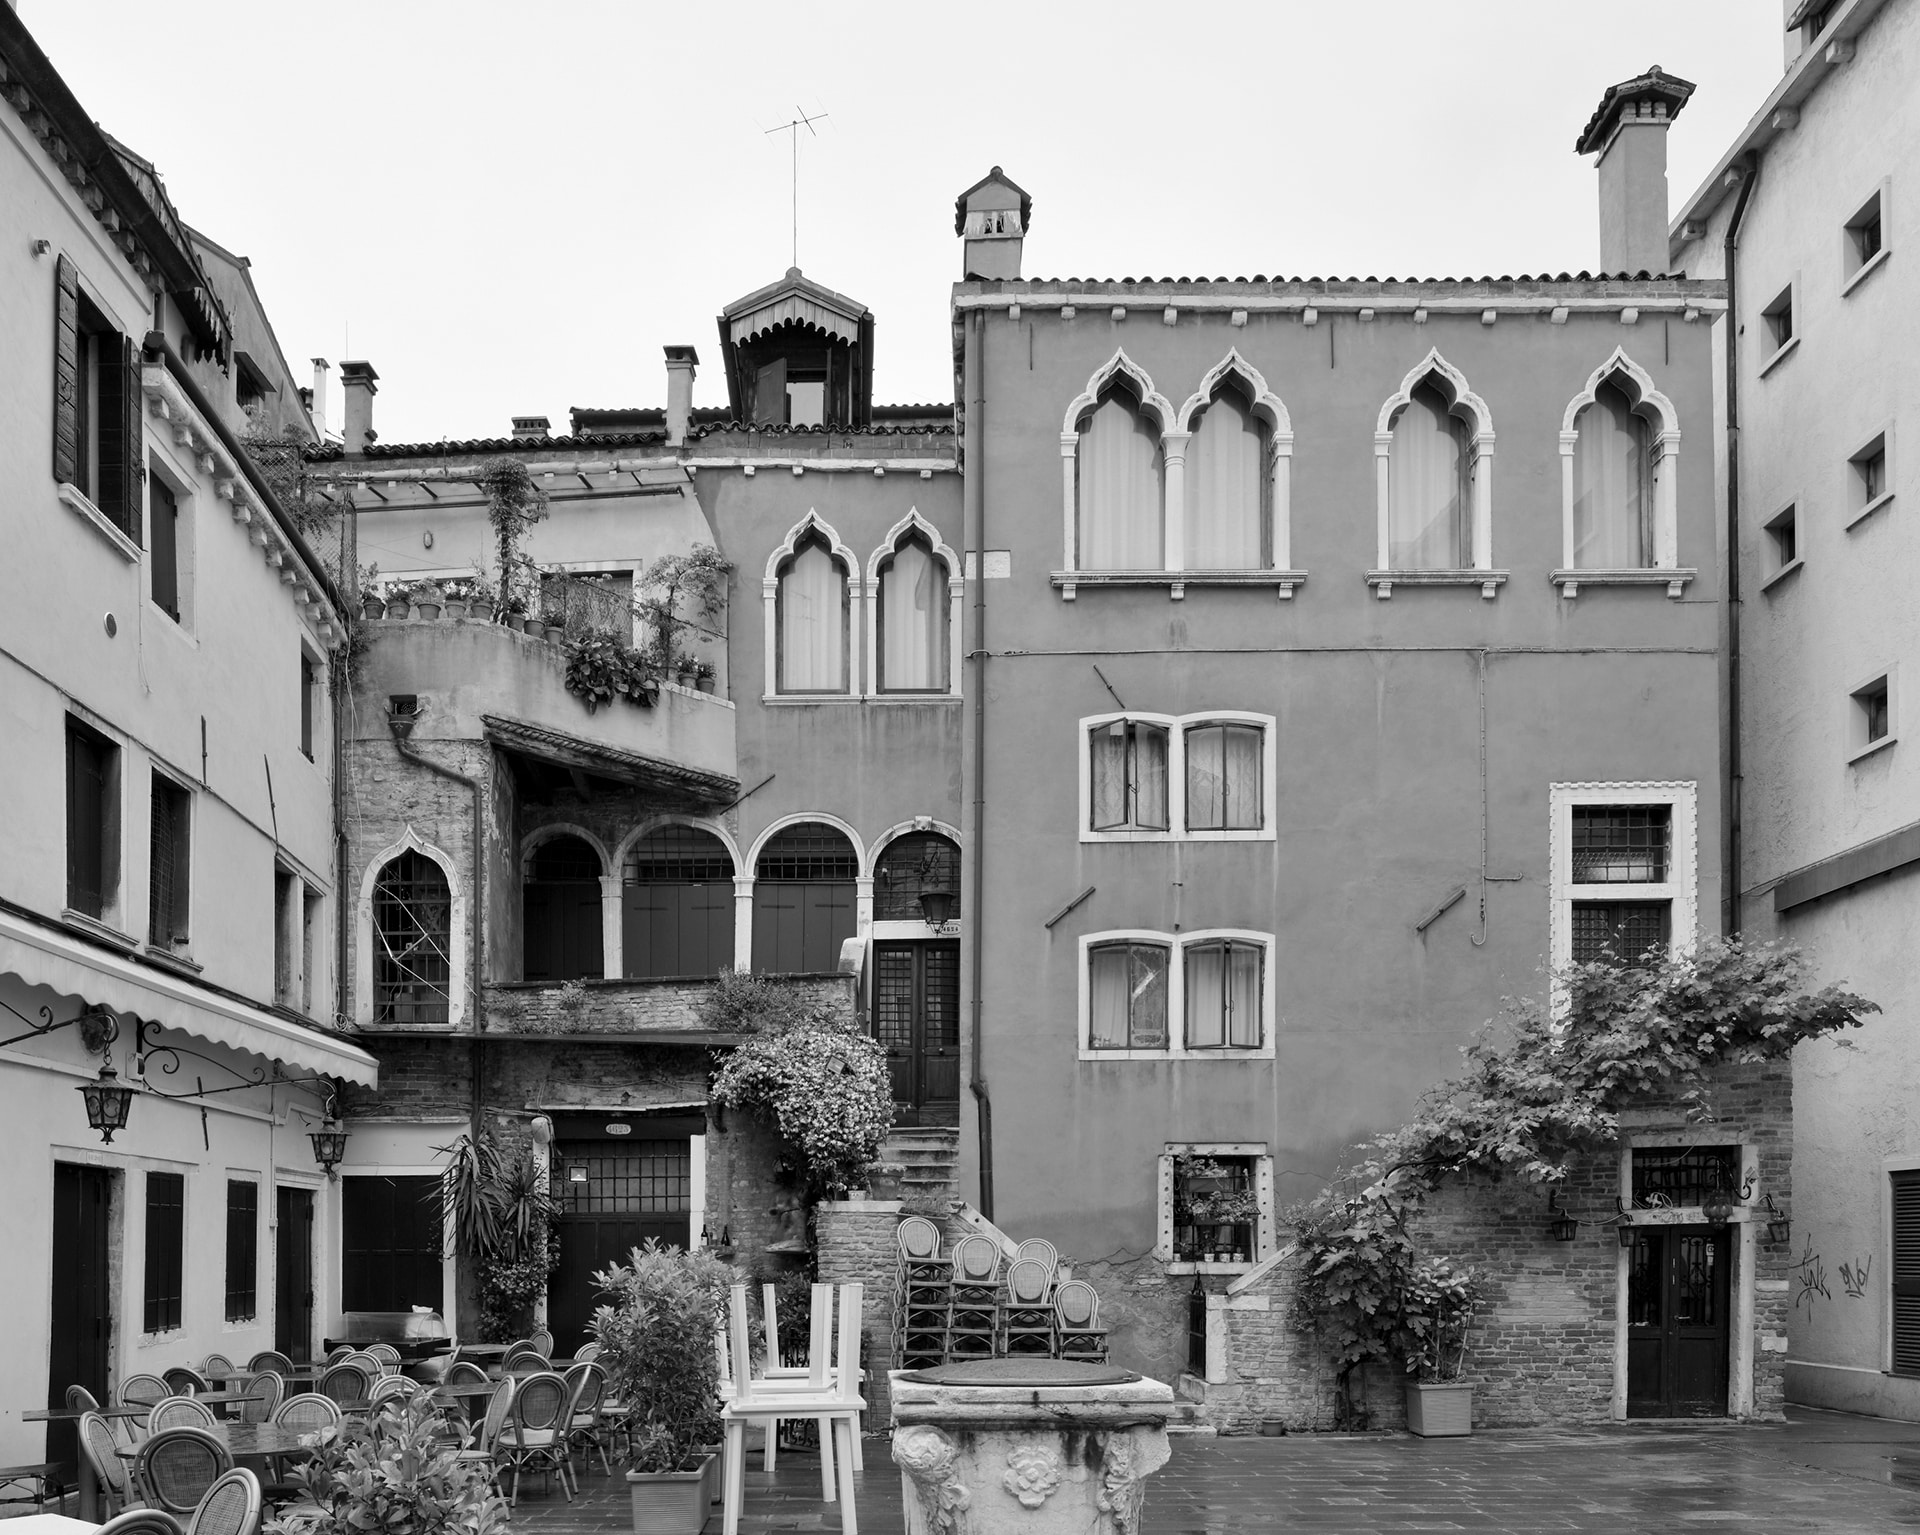 San Marco, Corte del Teatro, 2015. Venice Urban Photo Project / Mario Peliti